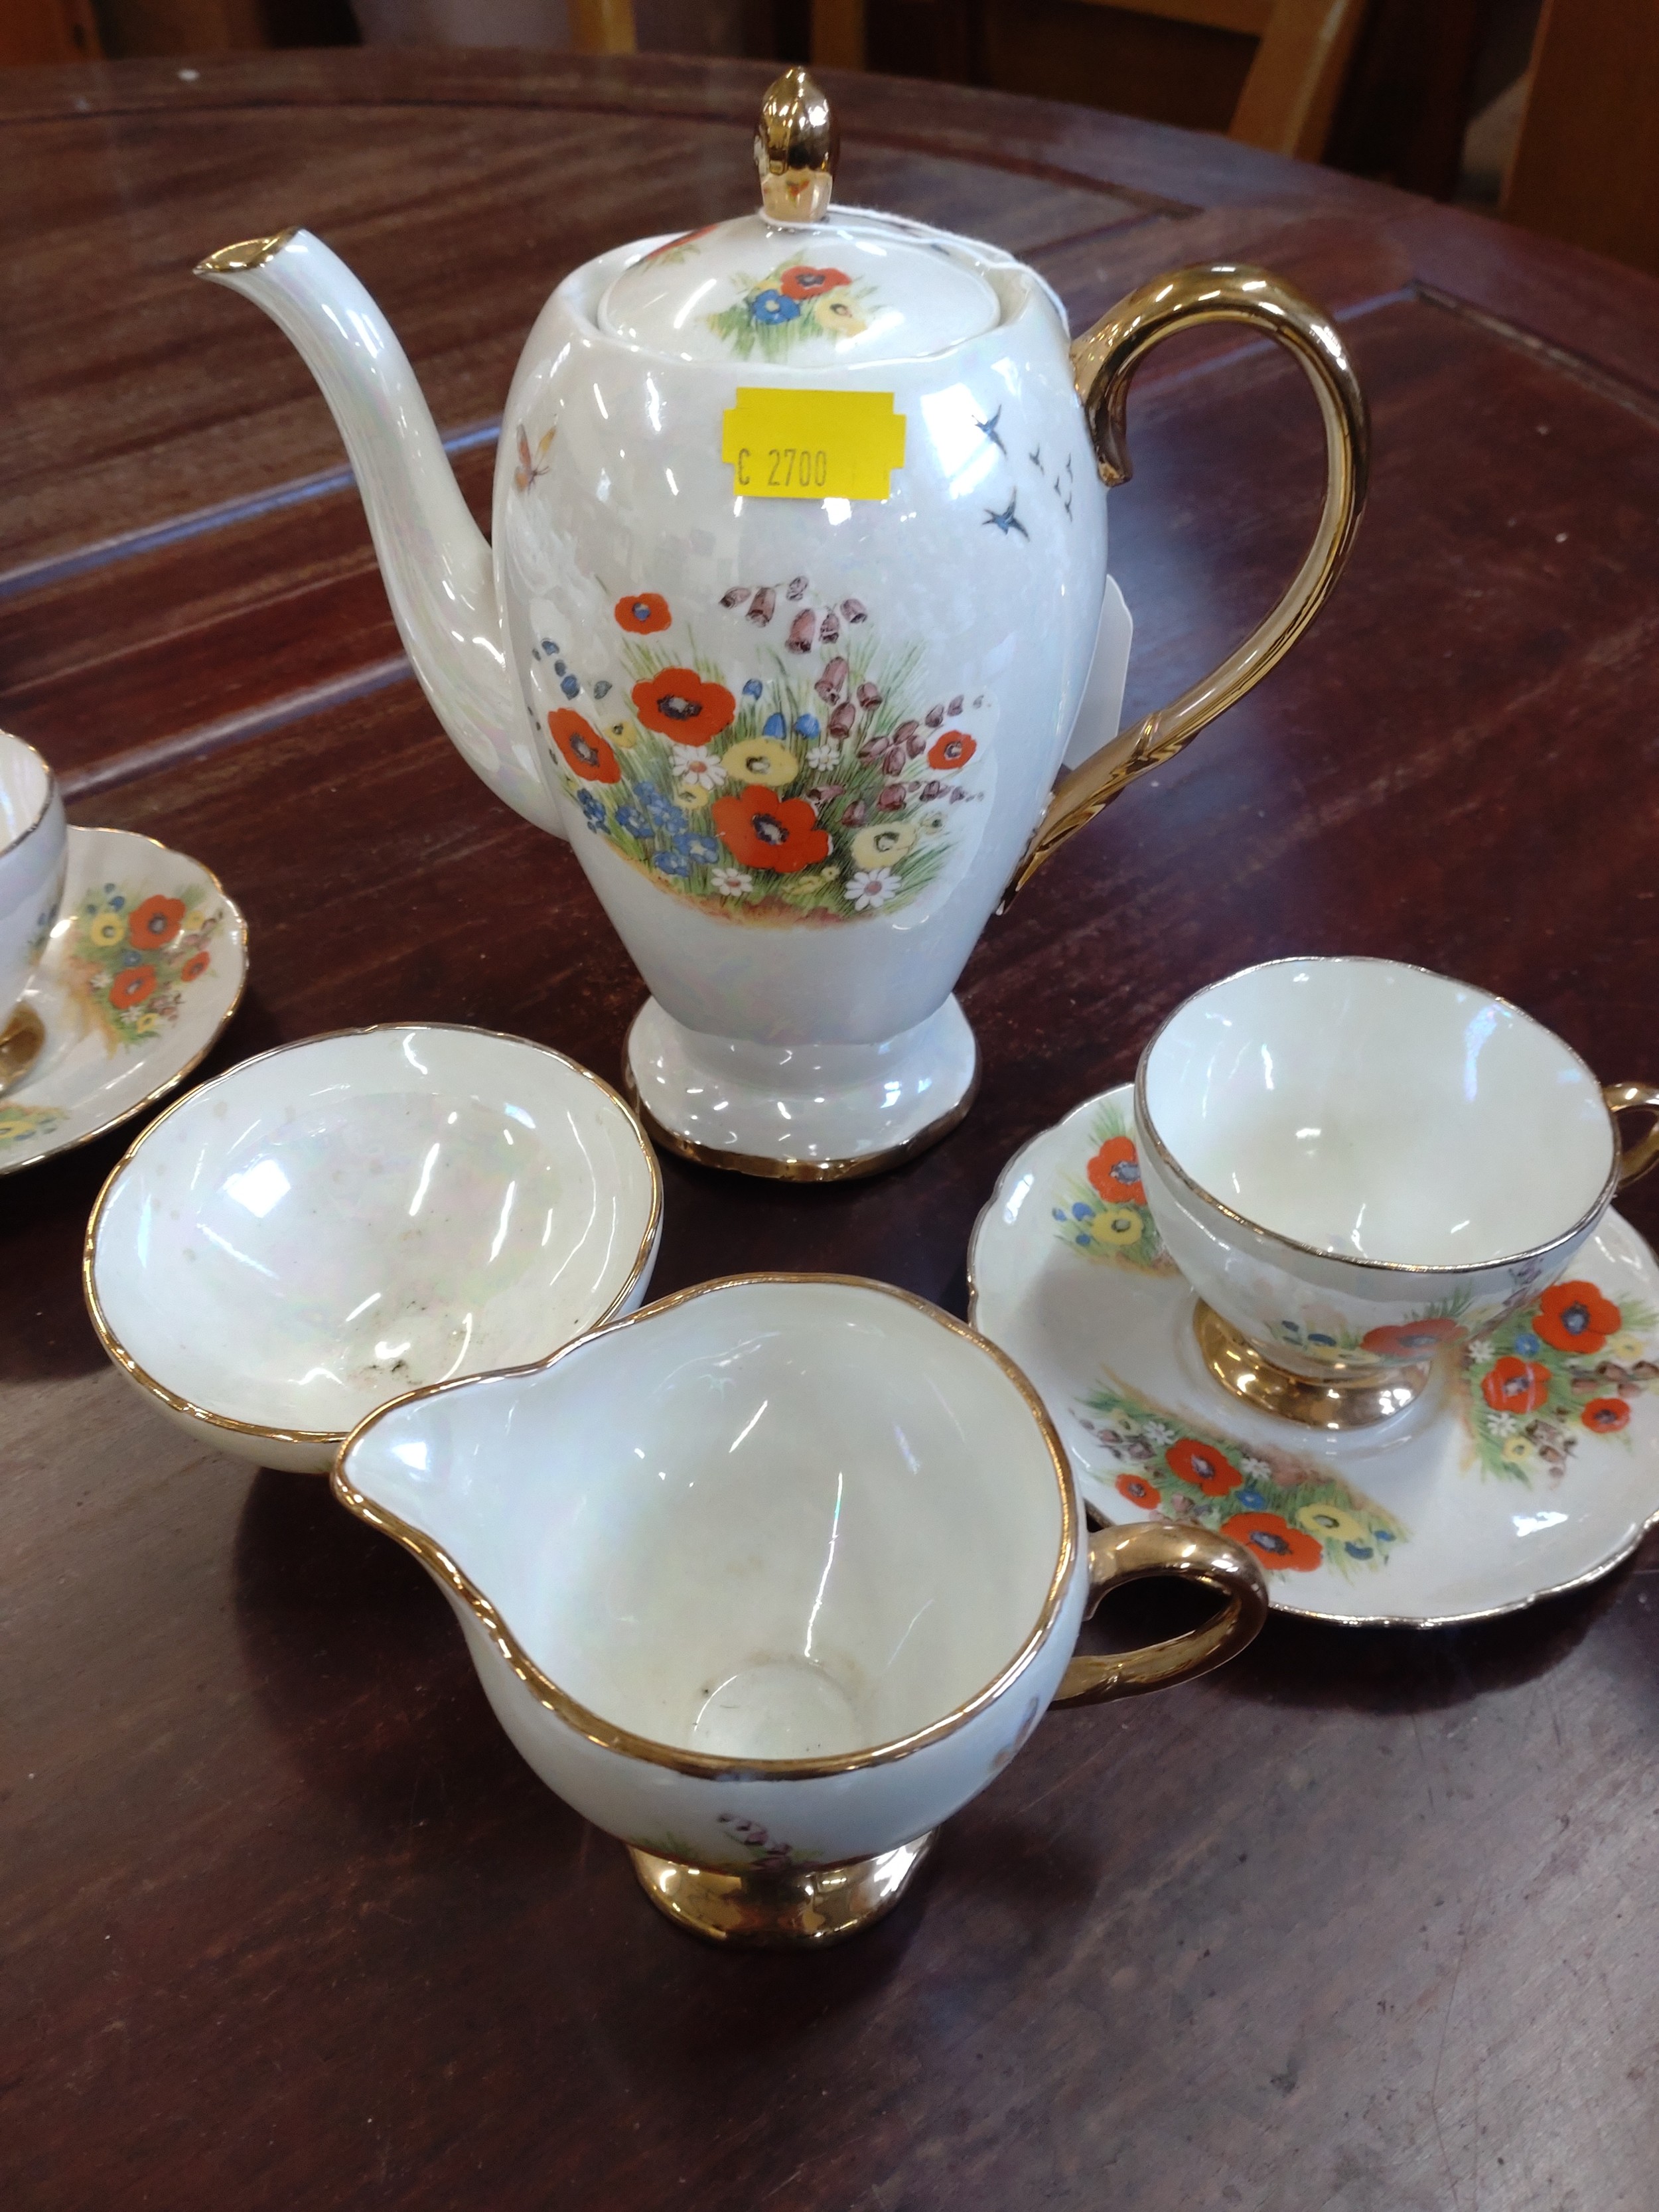 A lustre coffee set with floral decoration and a part tea service (lacks teapot). (34)